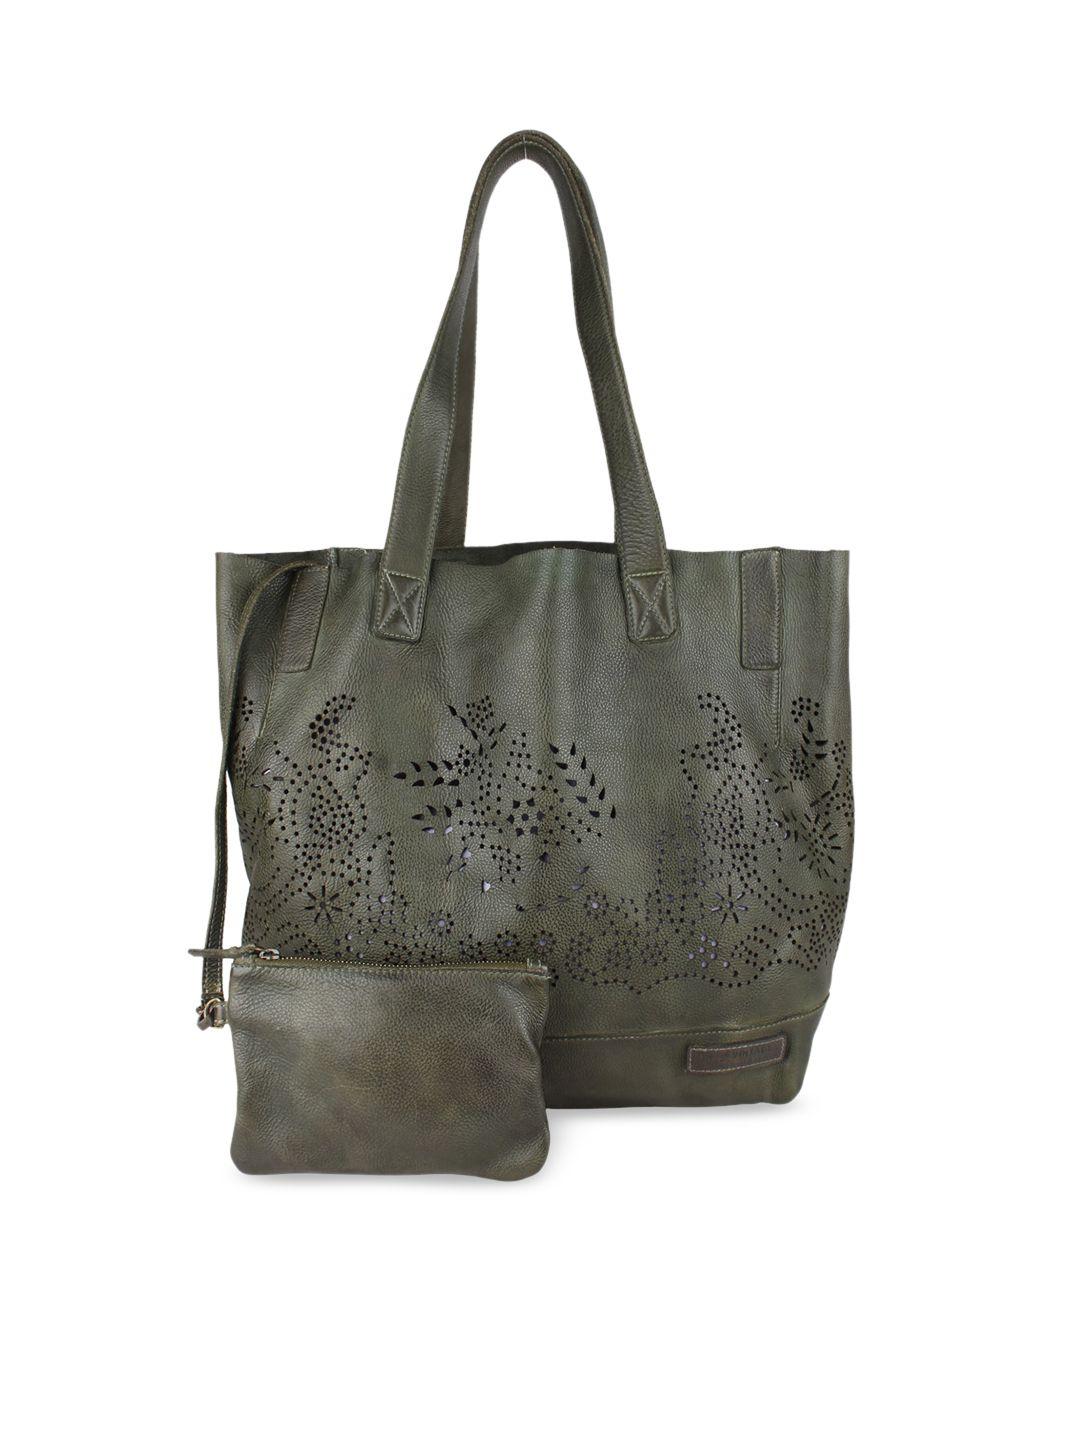 art n vintage olive green leather self design oversized shopper tote bag